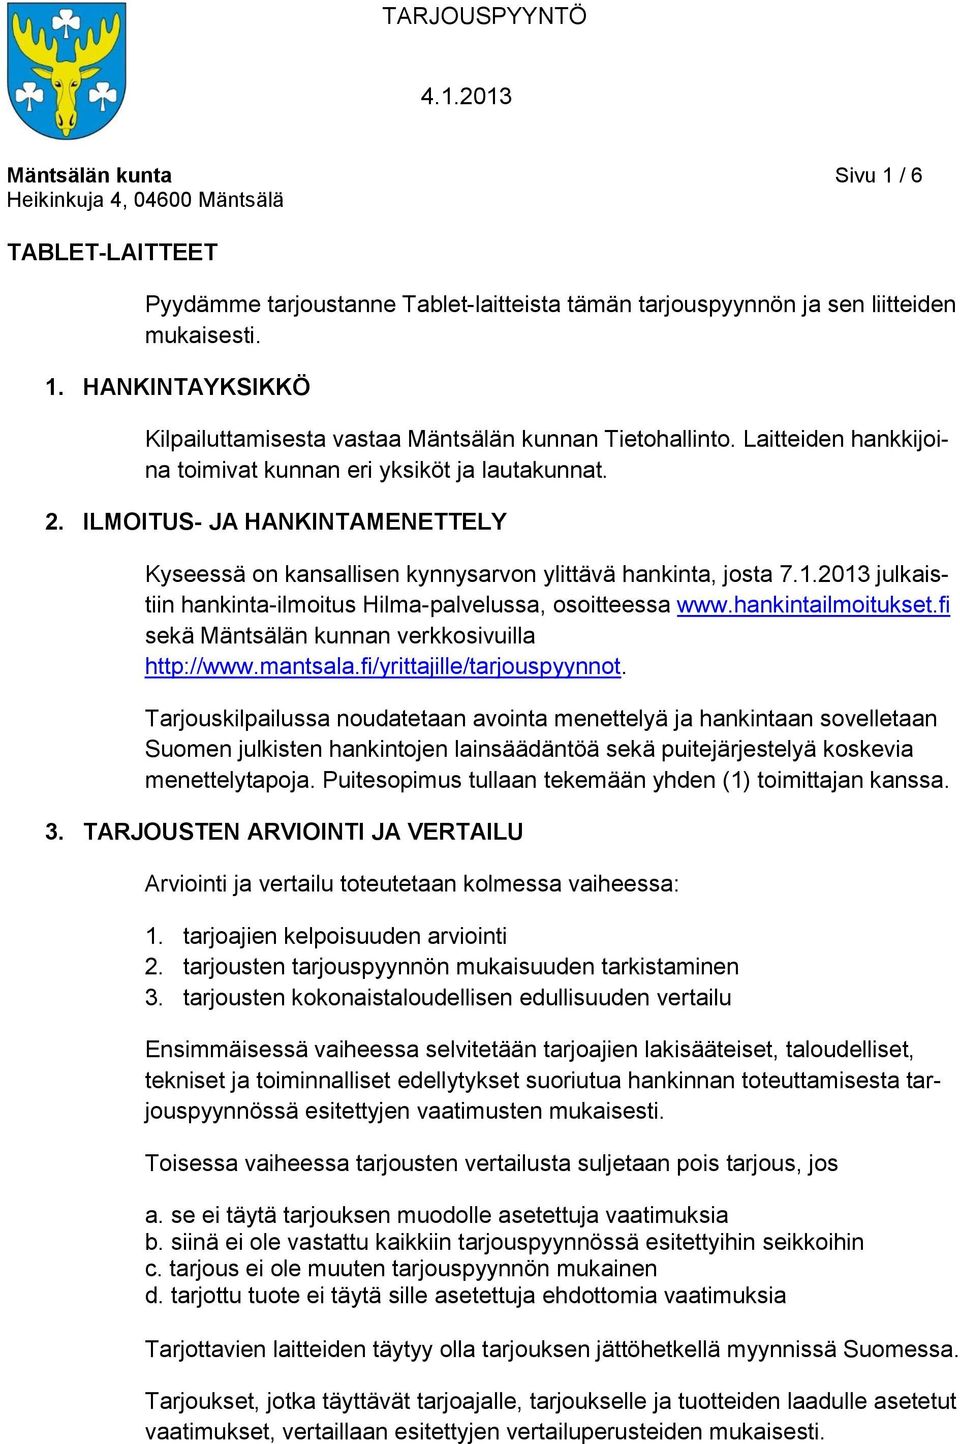 2013 julkaistiin hankinta-ilmoitus Hilma-palvelussa, osoitteessa www.hankintailmoitukset.fi sekä Mäntsälän kunnan verkkosivuilla http://www.mantsala.fi/yrittajille/tarjouspyynnot.